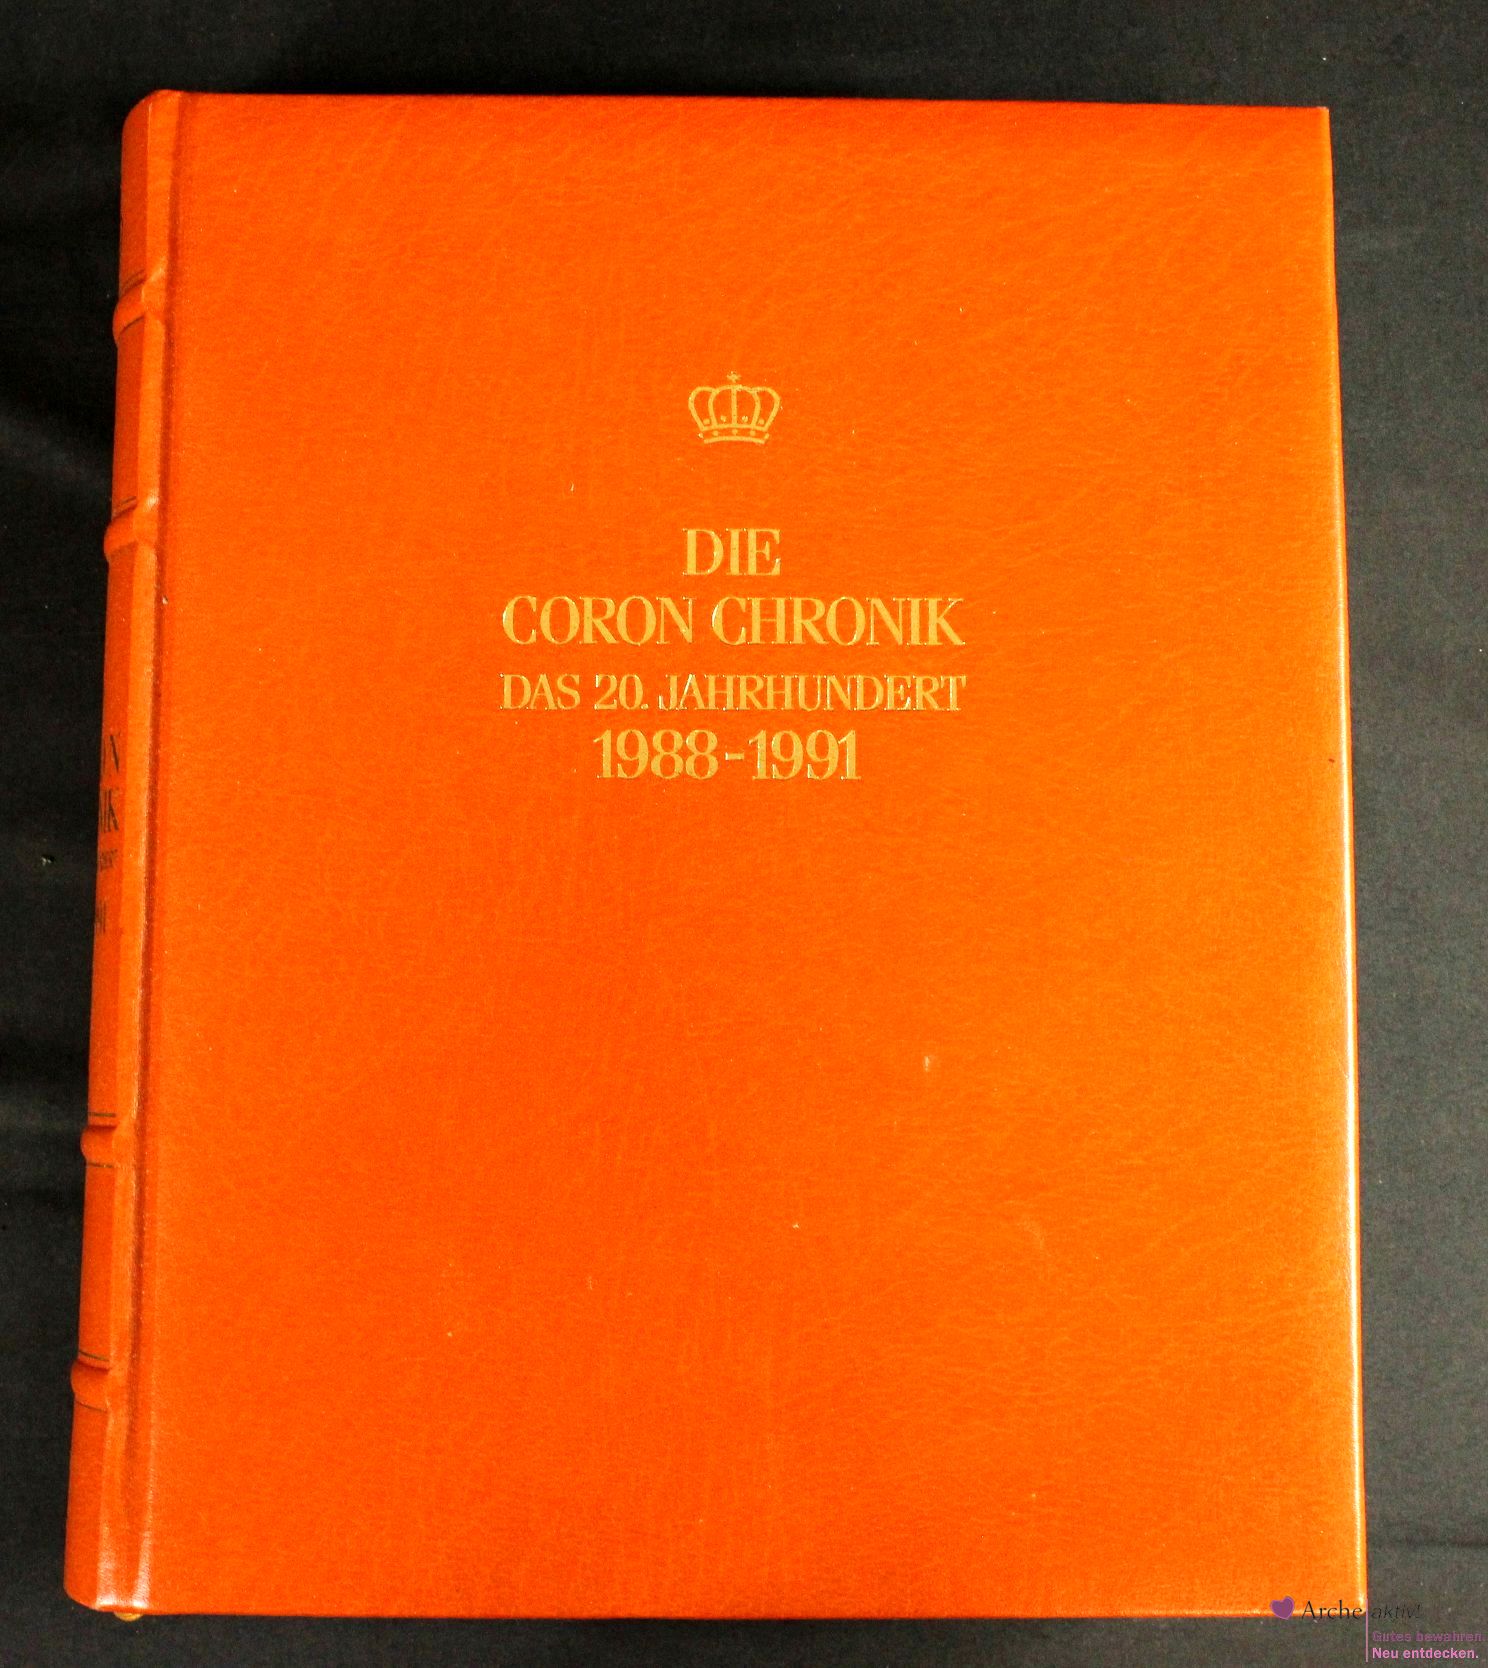 Die Coron Chronik - Das 20. Jahrhundert 1988 - 1991, Band 23, mit Gold-Kopfschnitt, gebraucht